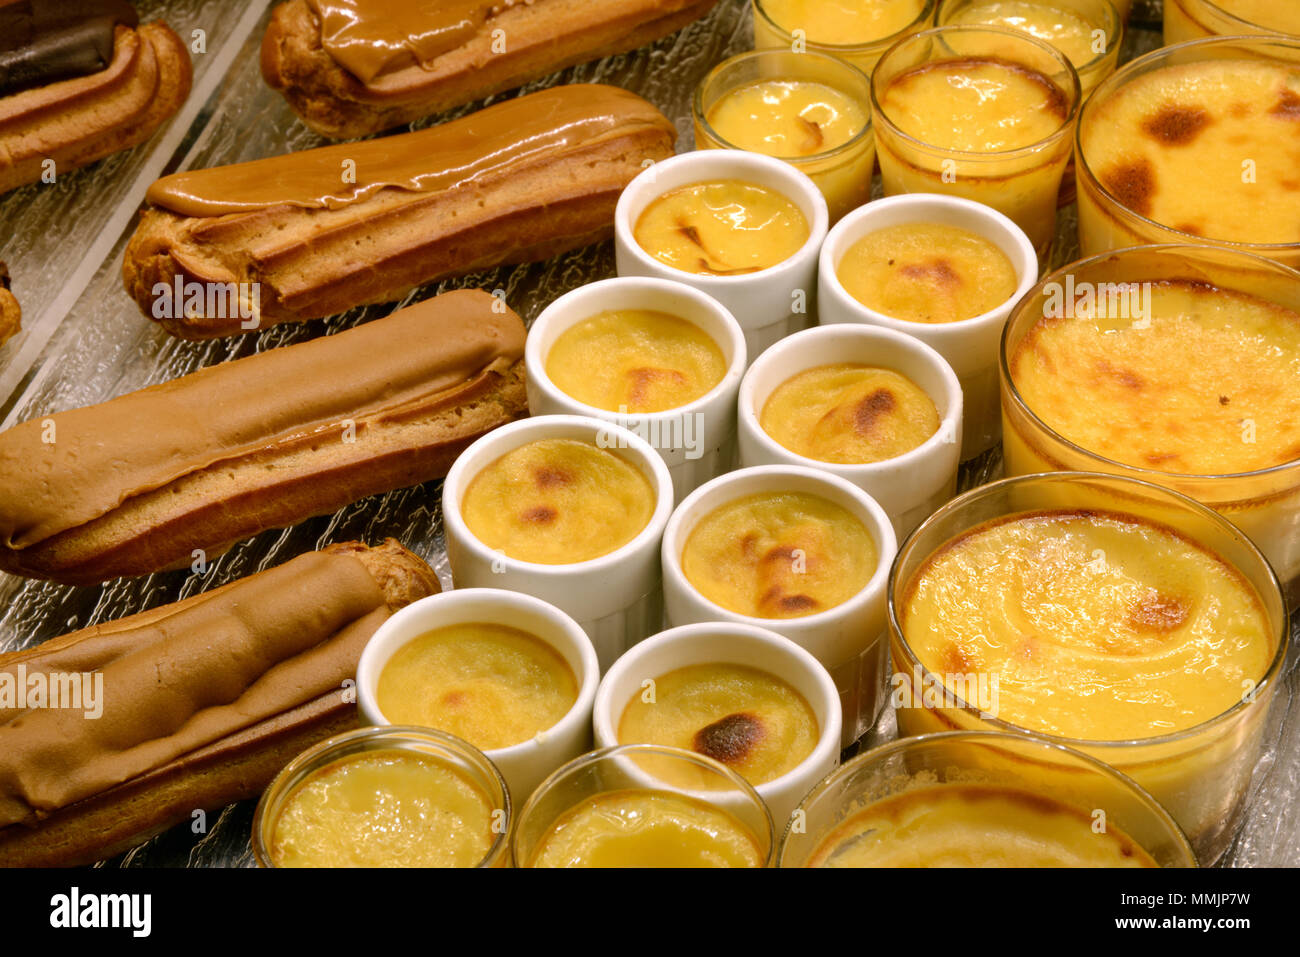 Anzeige von Cremes Karamell und Kaffee Eclairs Gebäck oder Kuchen in einem französischen Patisserie Frankreich Stockfoto